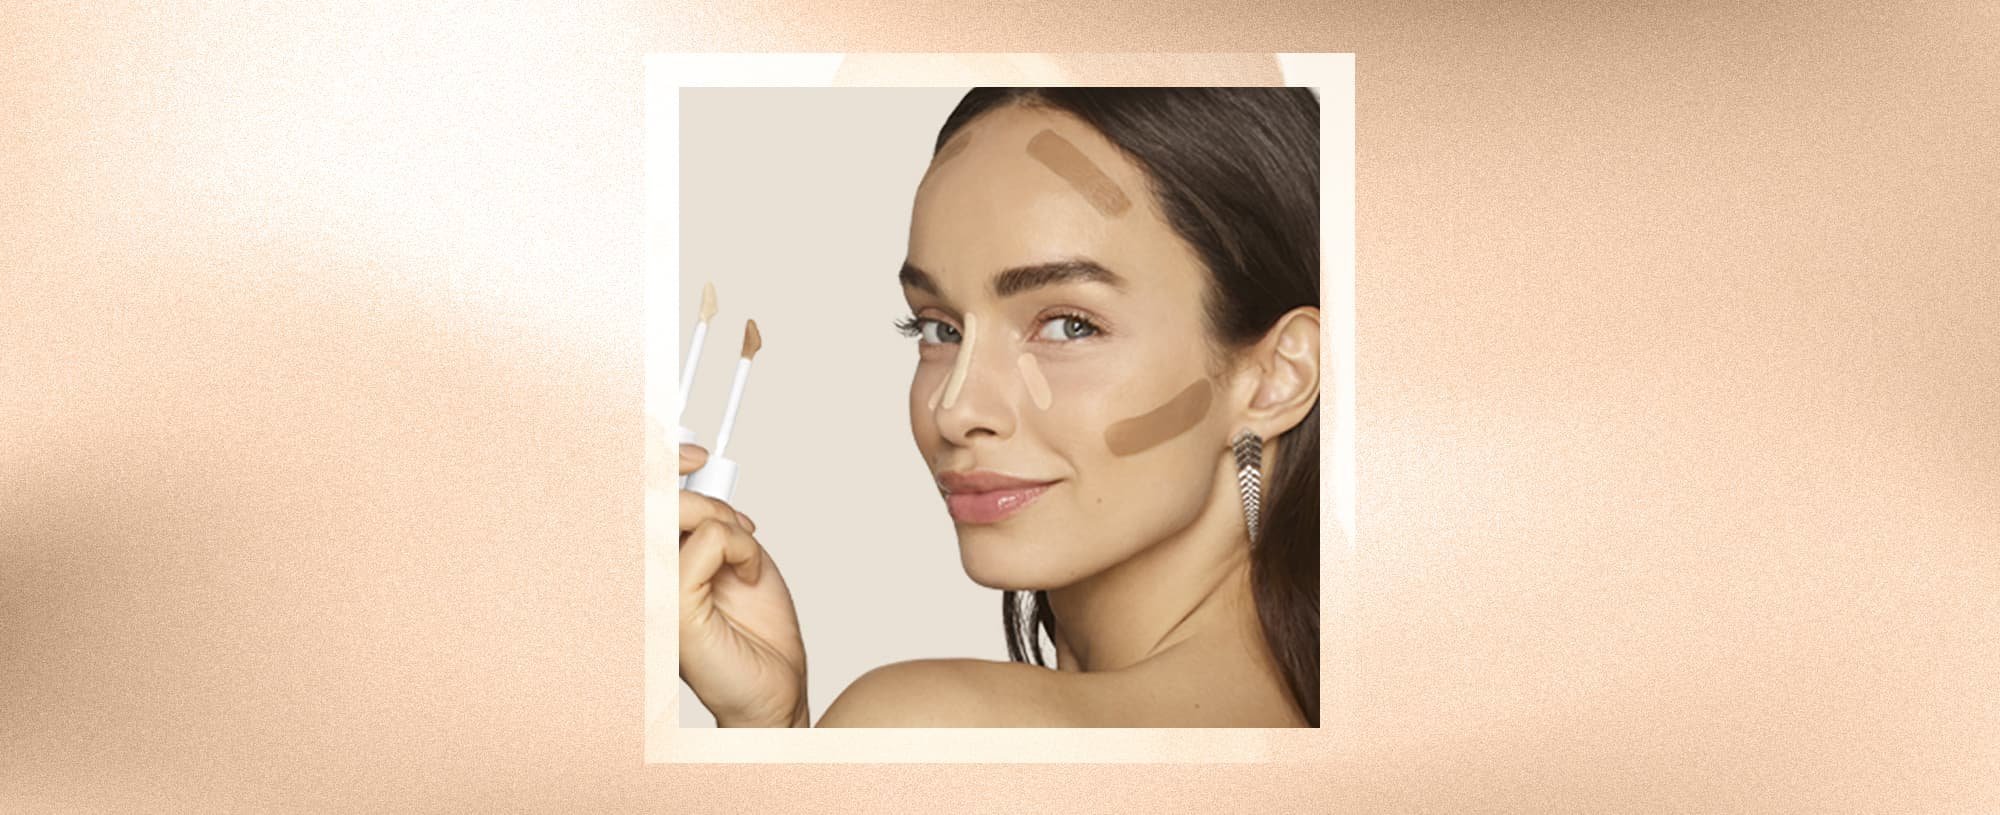 How to Contour Your Face Like a Pro - L'Oréal Paris